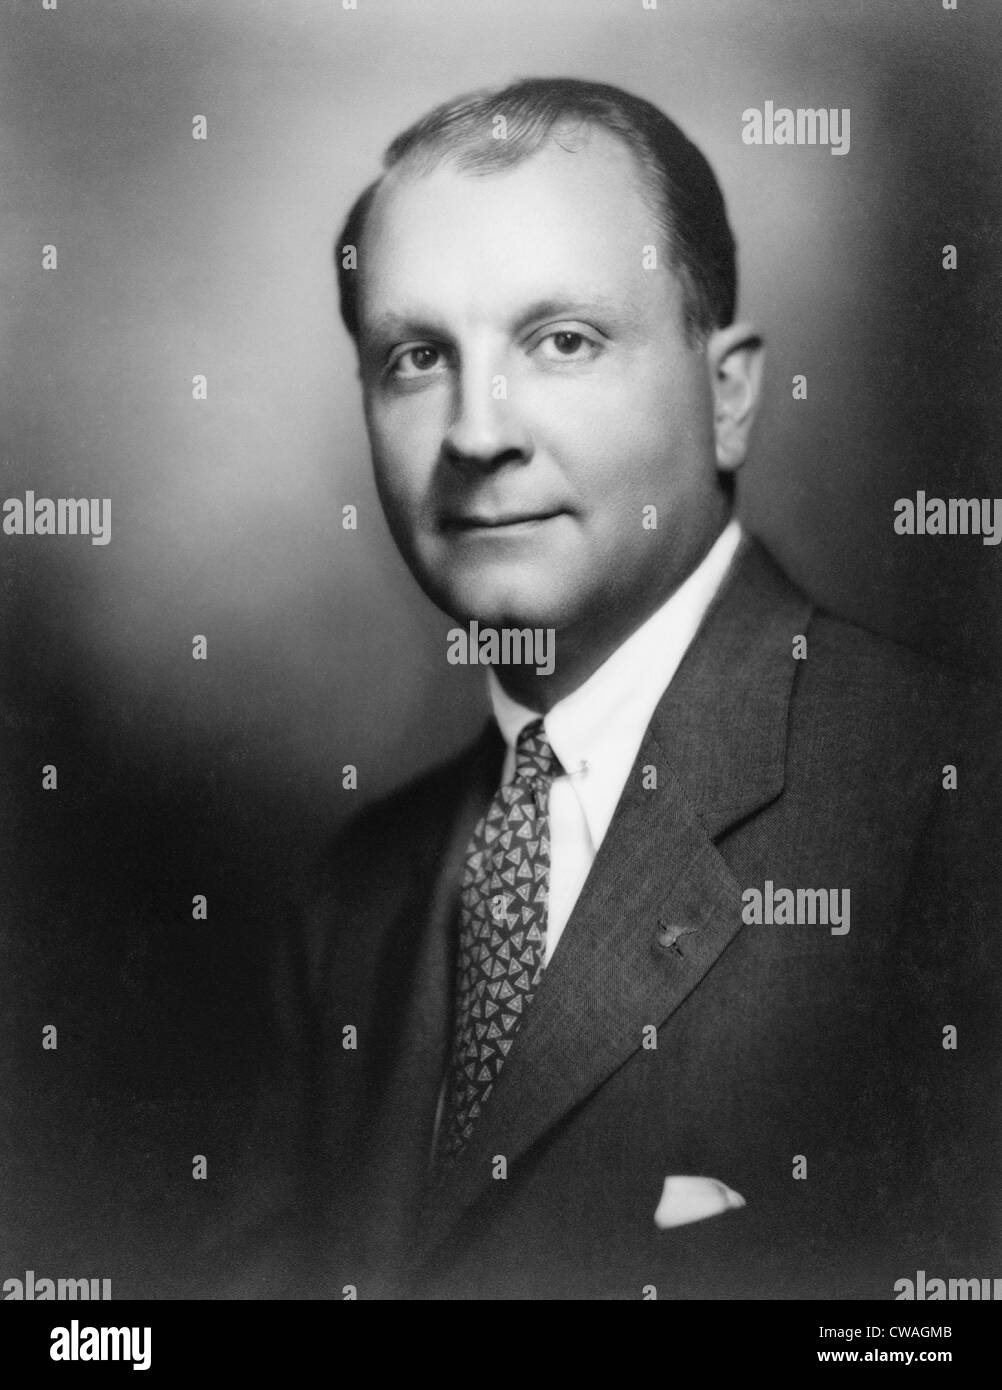 T. Juan Trippe, pionnier de l'aviation commerciale et fondateur de l'Organisation panaméricaine Airways, en 1927. Banque D'Images